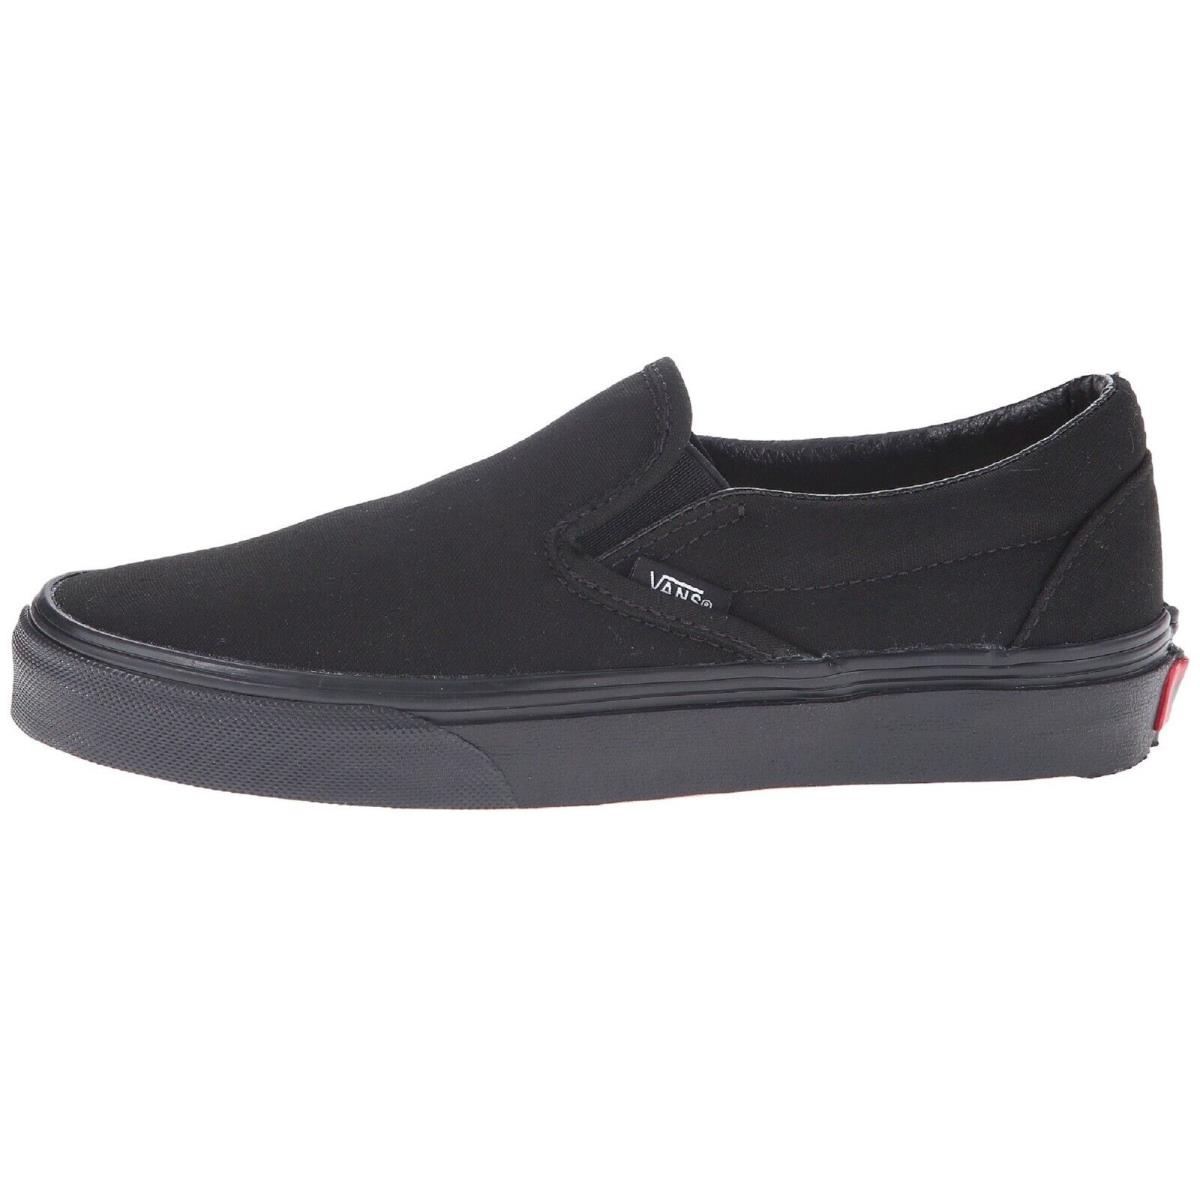 Vans Adult Unisex Classic Skate Shoes Slip-on Black/black VN000EYEBKA - Black